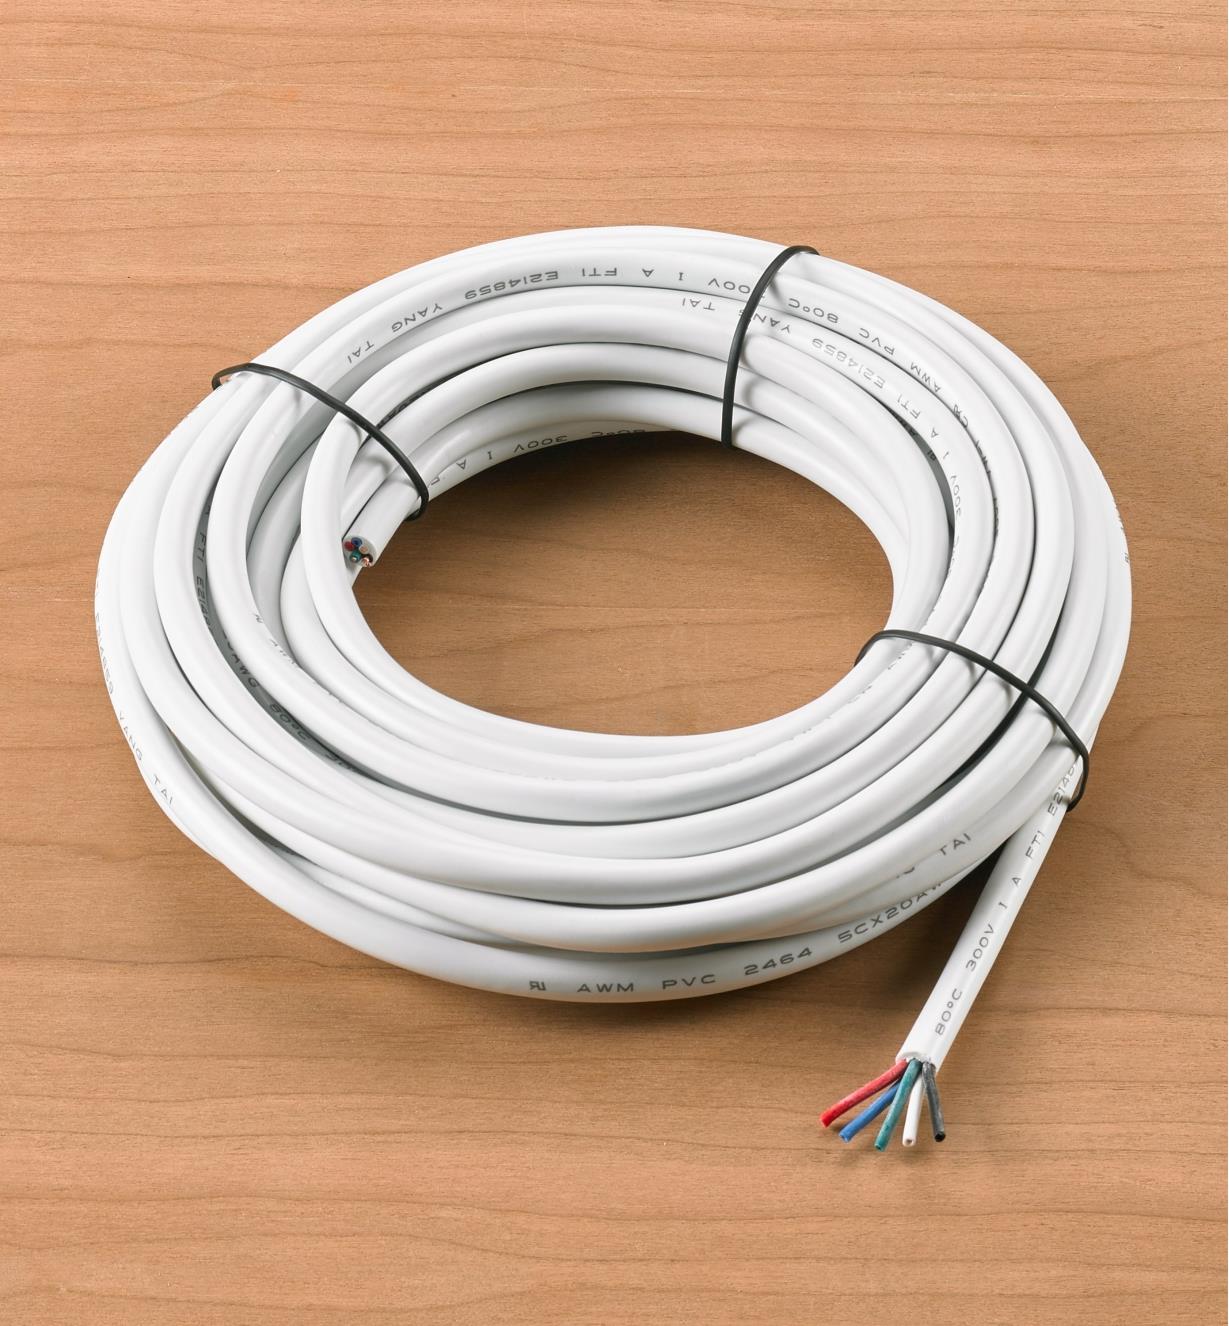 00U4654 - Câble à cinq fils de calibre 20 pour installation en mur, 26 pi 3 po (8 m)